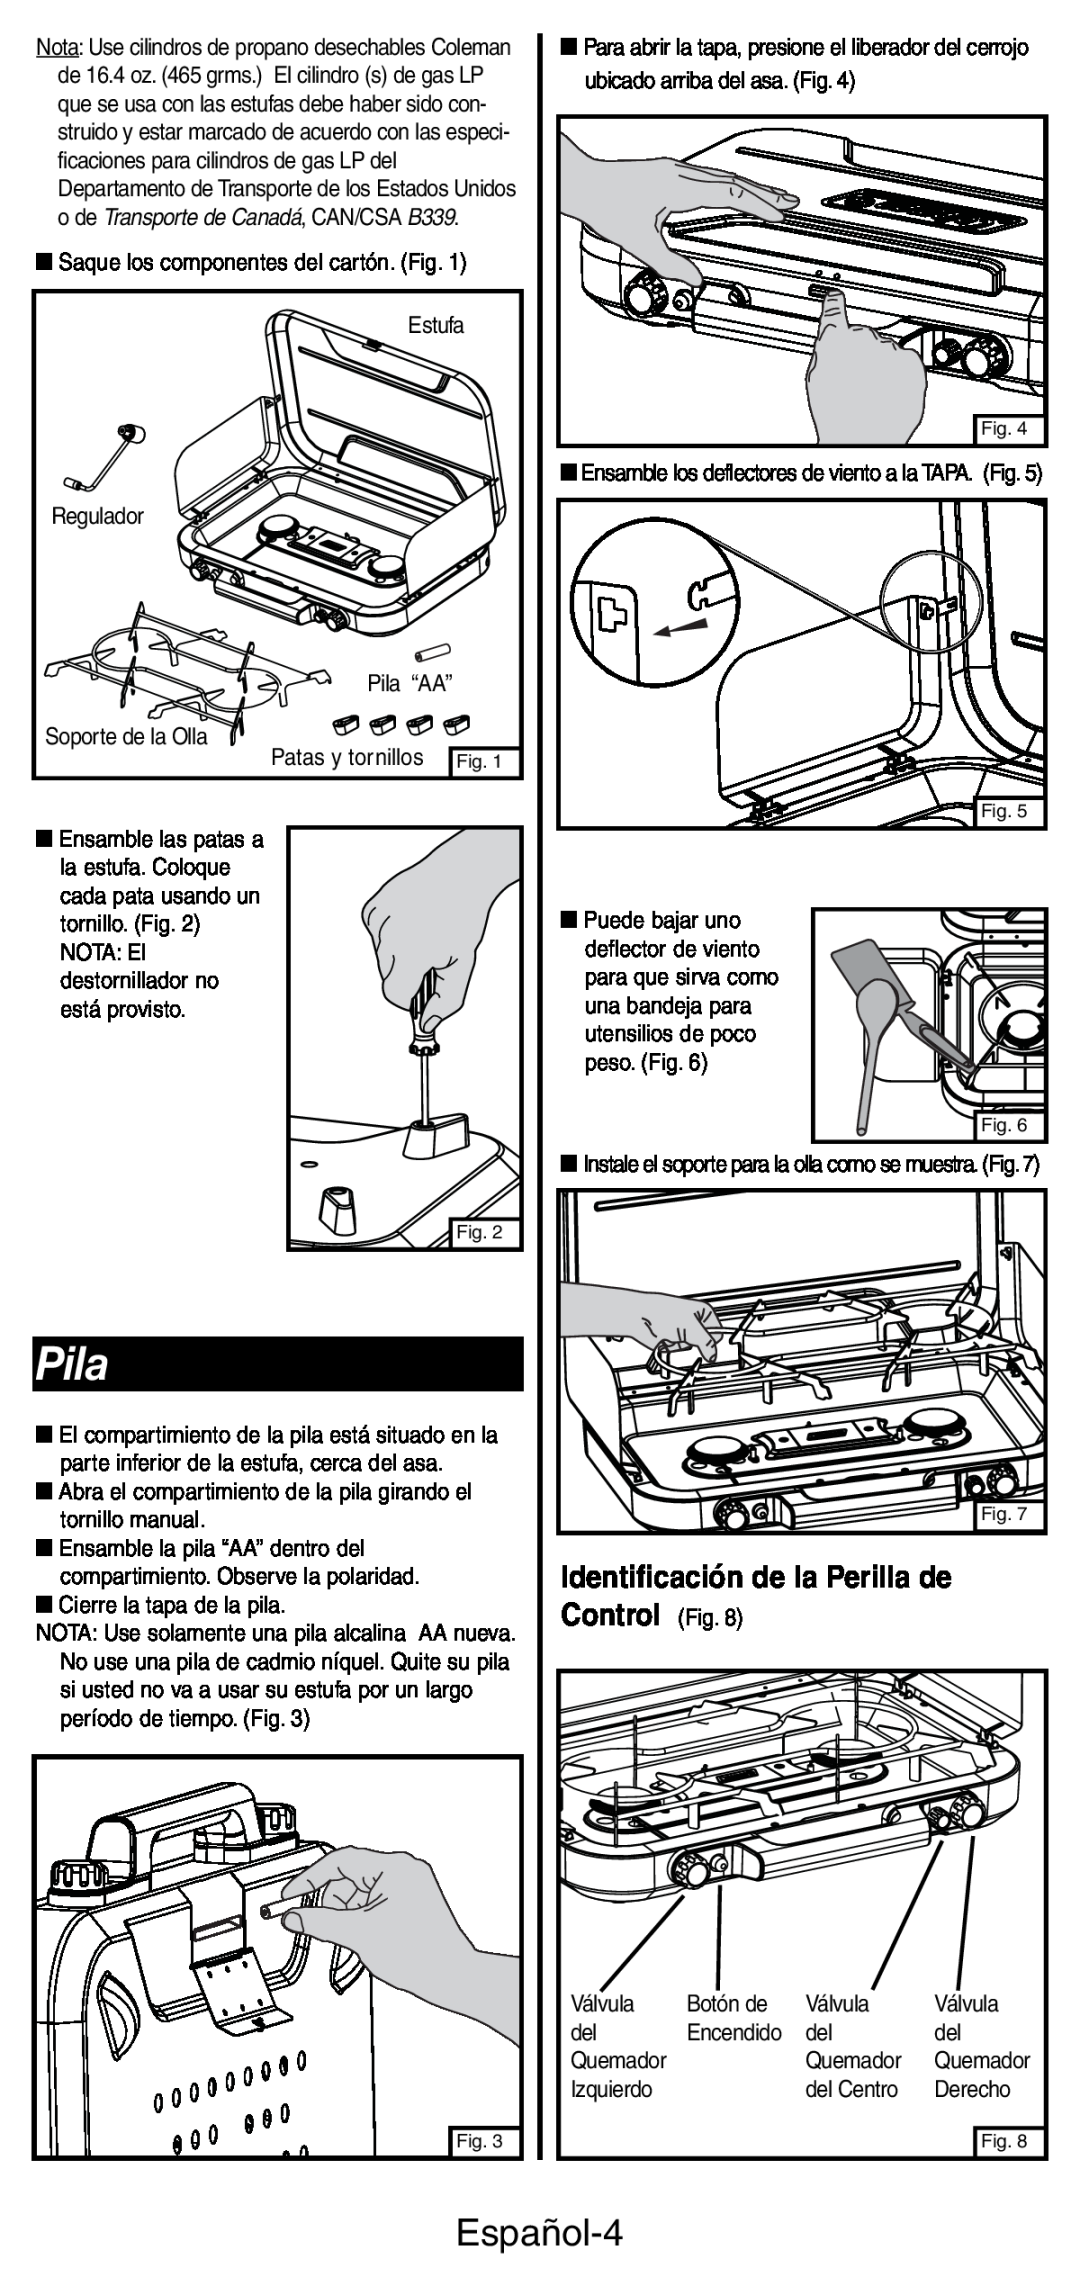 Coleman 5444 Series manual Pila, Español-4, Control Fig, Identificación de la Perilla de 